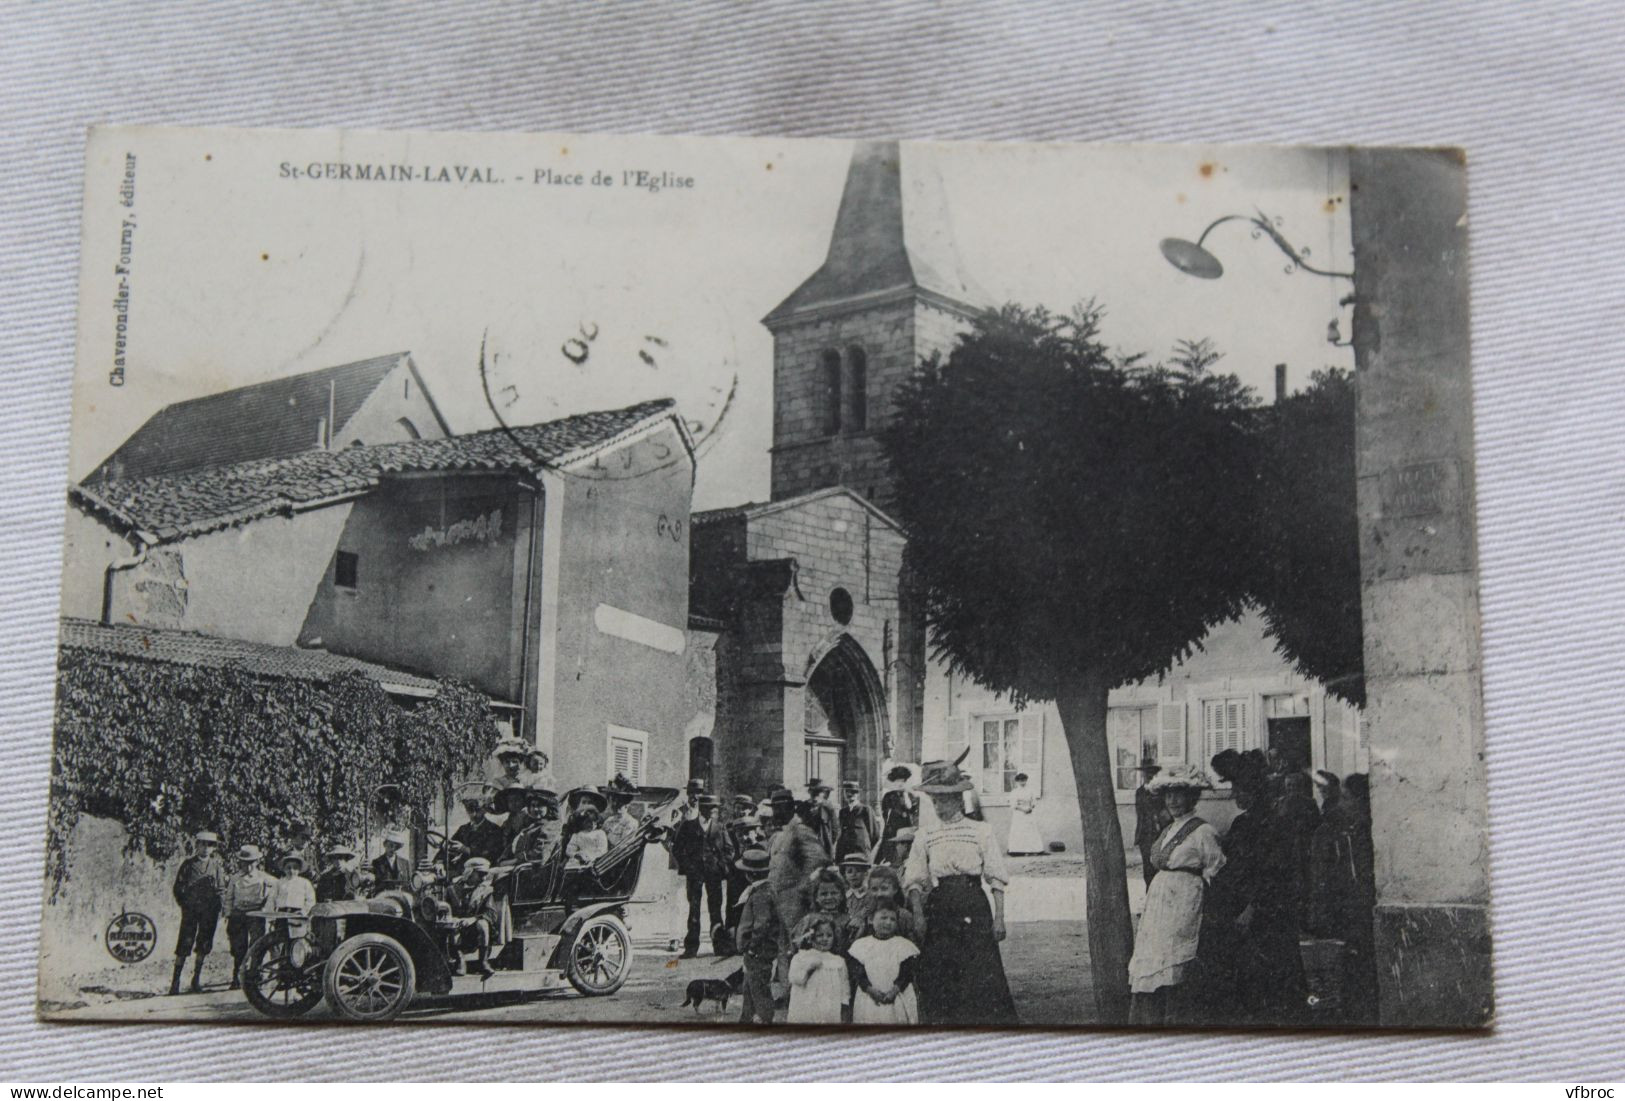 Cpa 1920, Saint Germain Laval, Place De L'église, Loire 42 - Saint Germain Laval